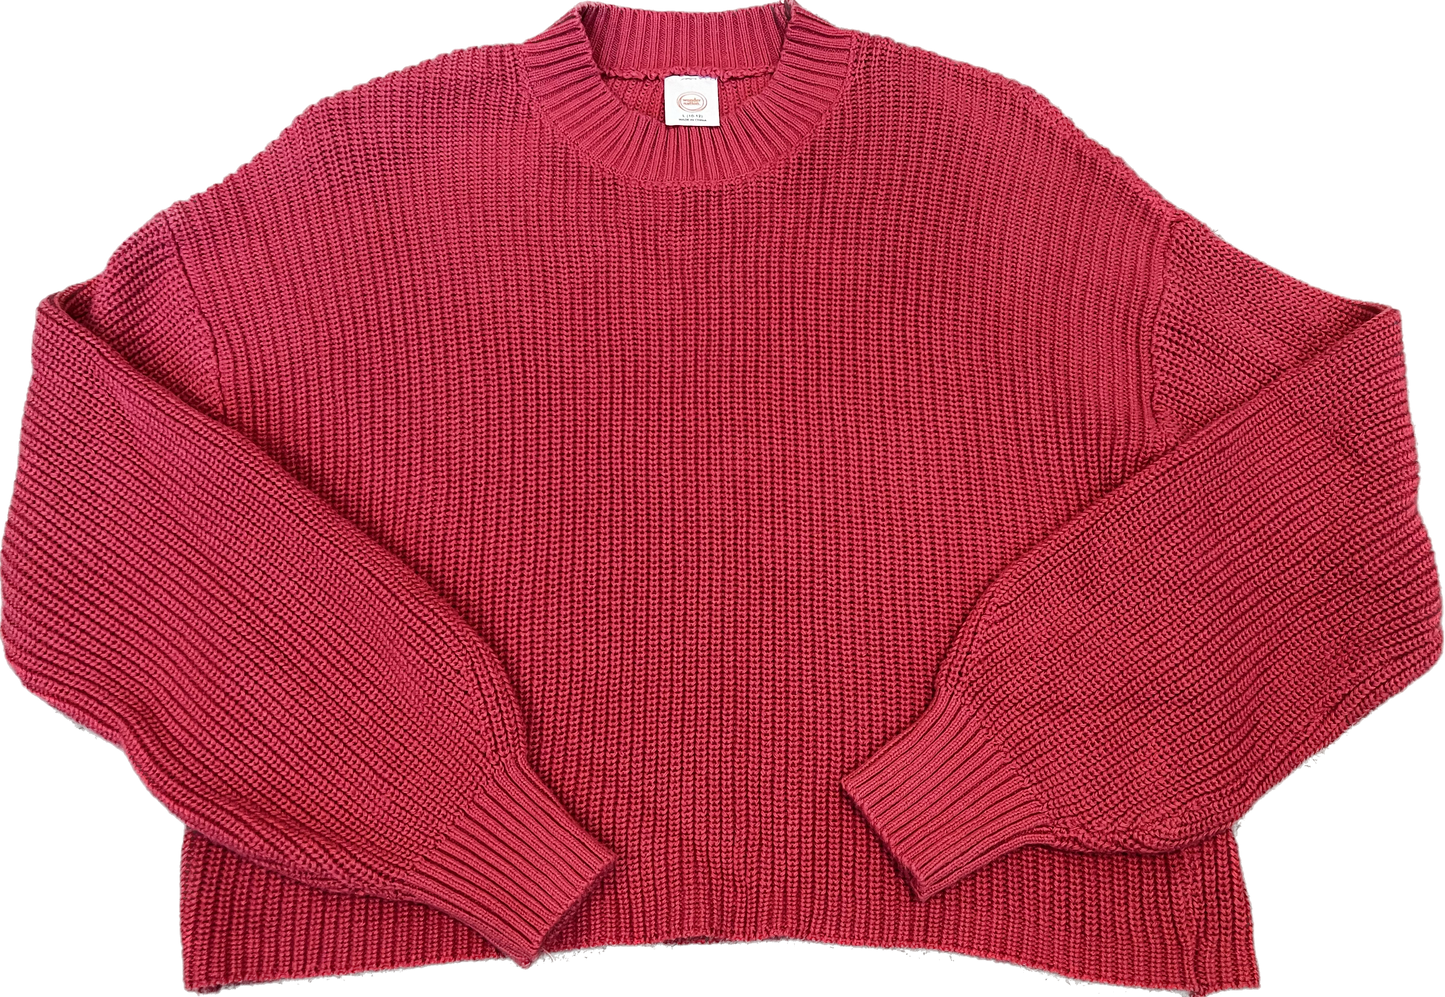 YL (10-12) boxy knit sweater